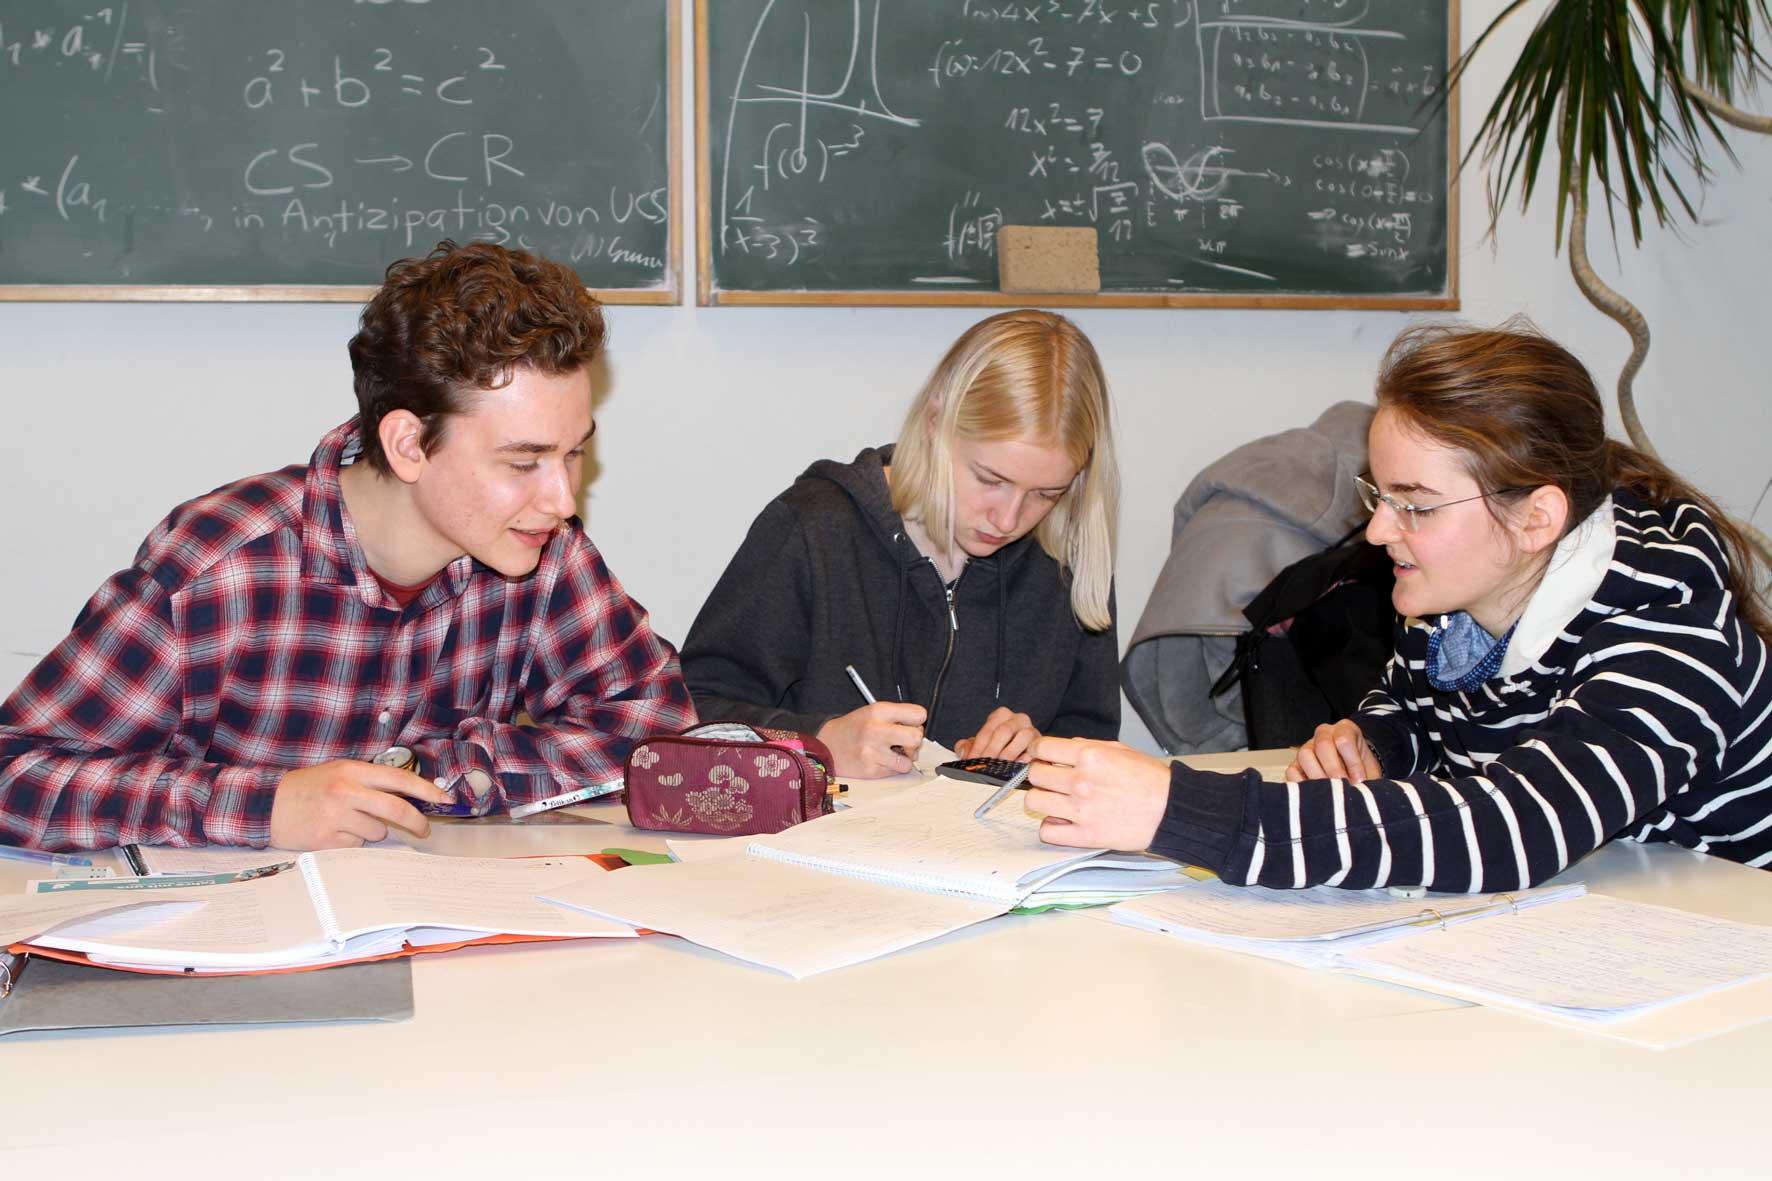 Studierende lösen Mathematikaufgaben in Gruppen
Quelle: Olga Jarugski